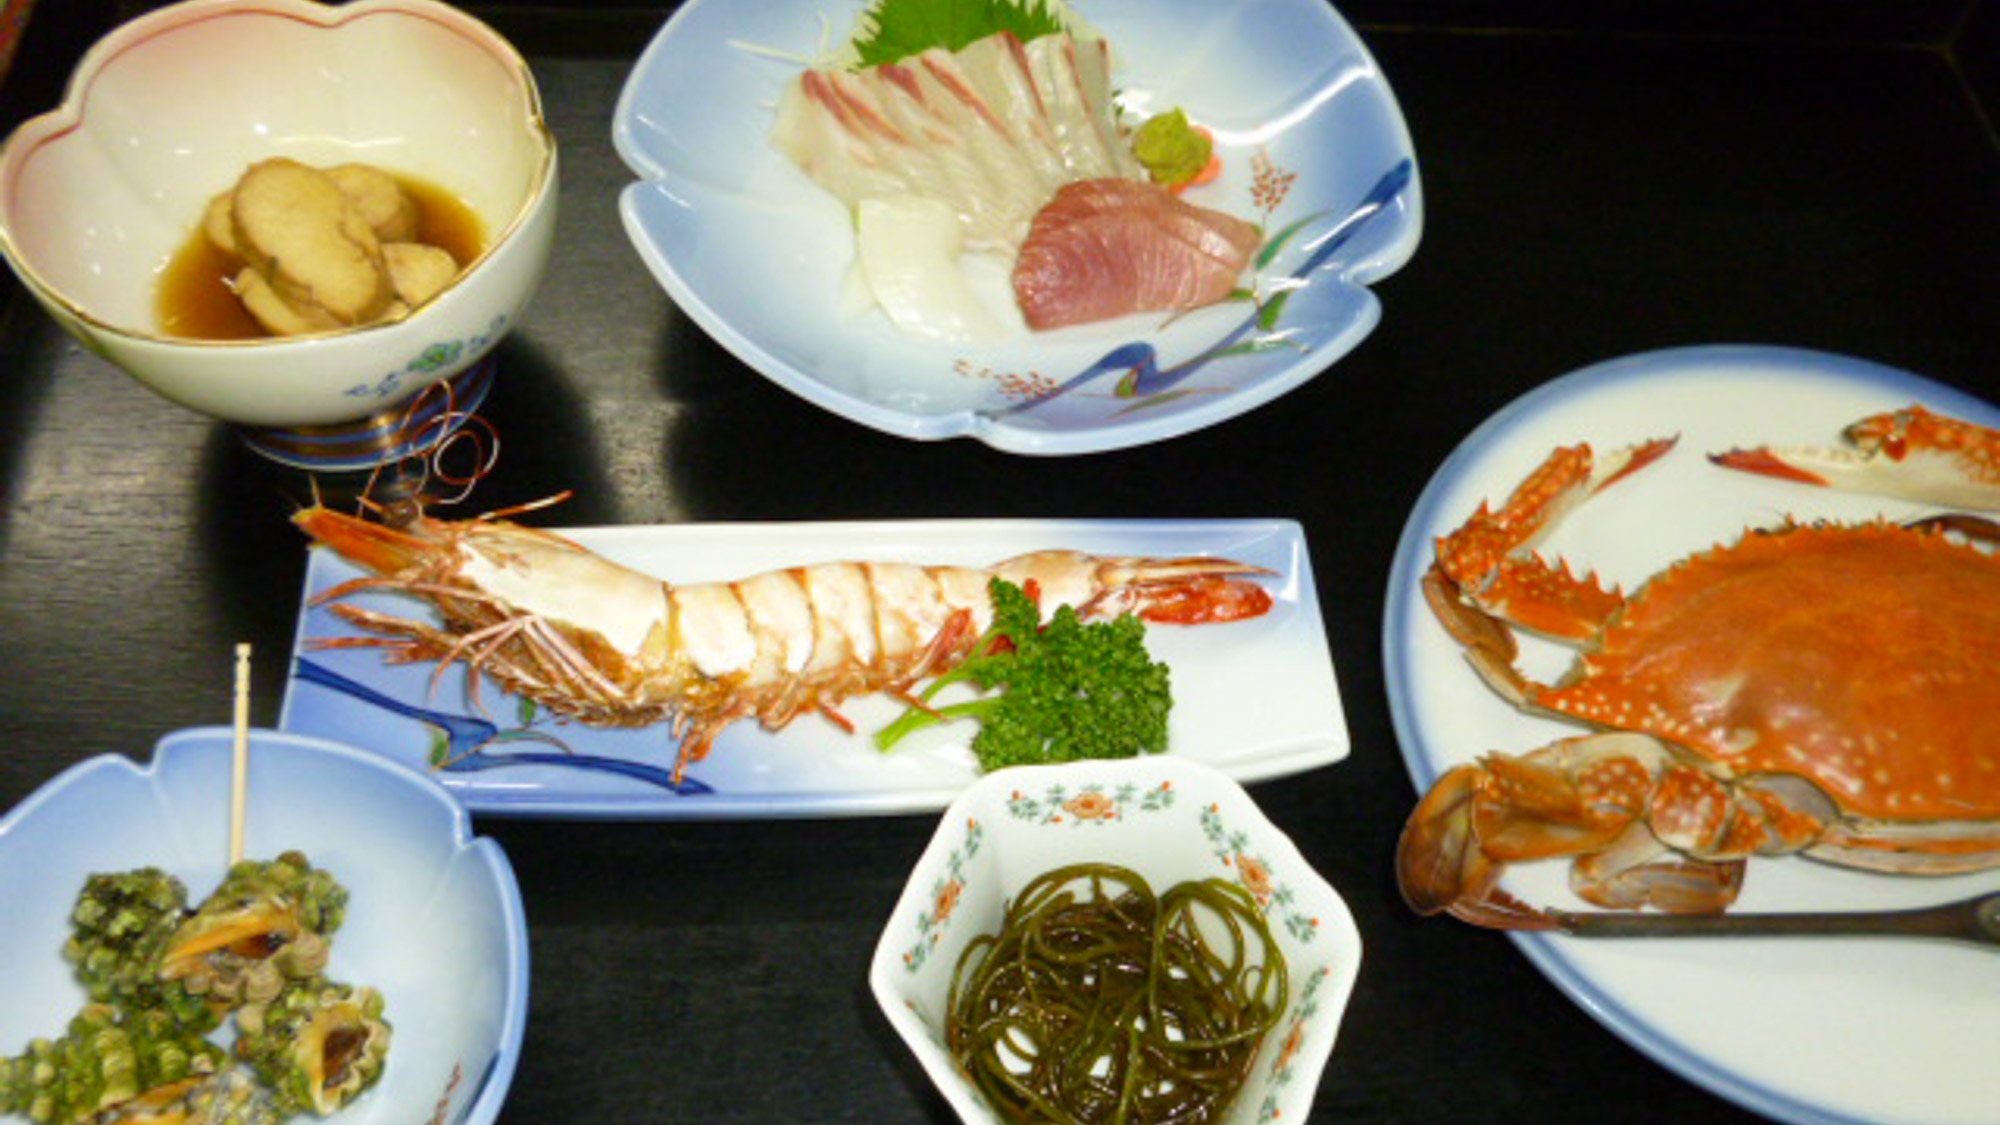 【お食事】野草の天ぷら、焼き魚、お刺身など。その日によってメニューを変えておだししています。